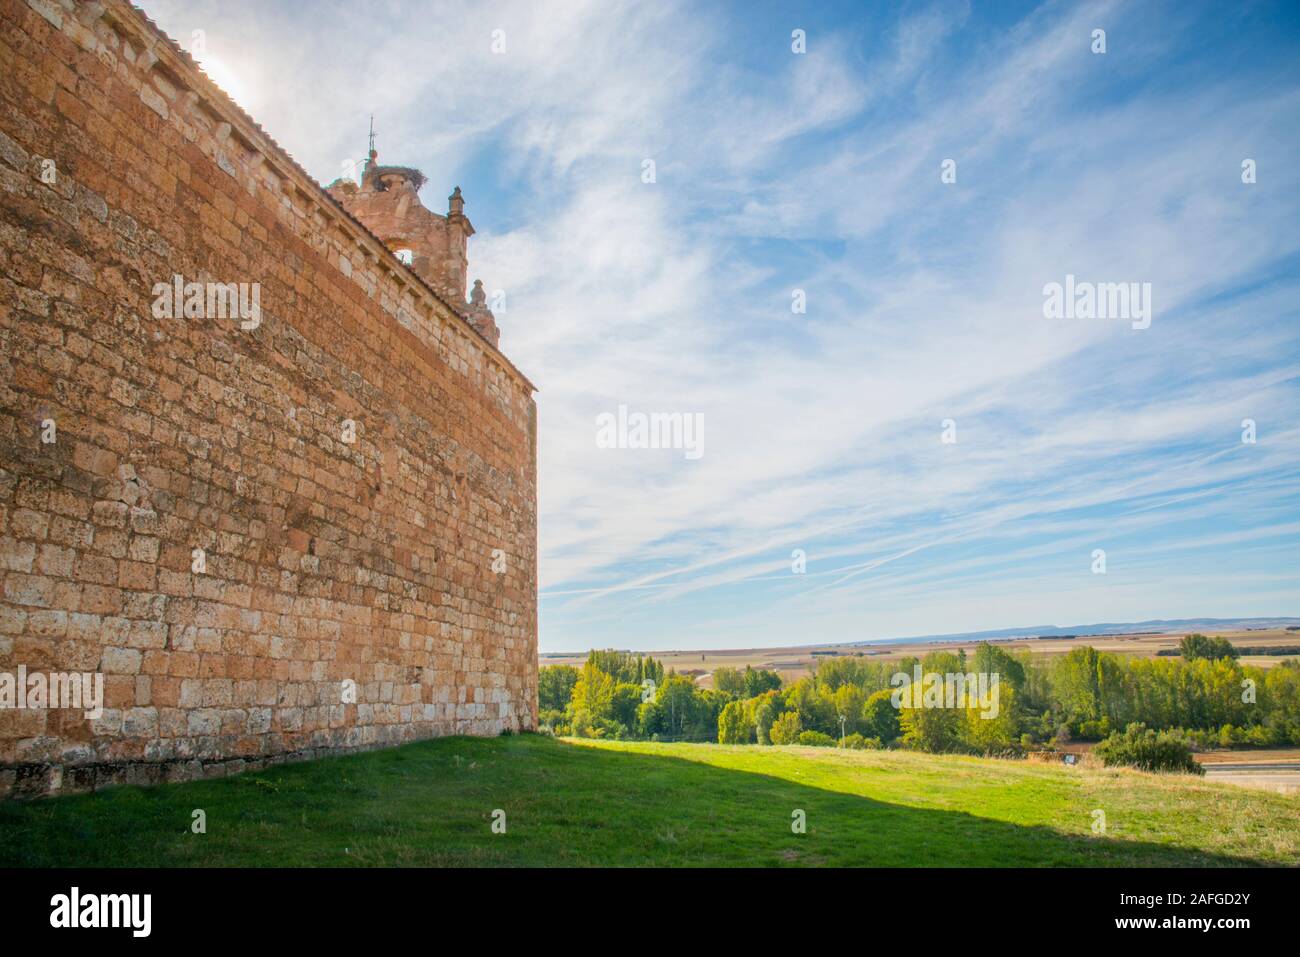 Church and landscape. Santa Maria de Riaza, Segovia province, Castilla Leon, Spain. Stock Photo